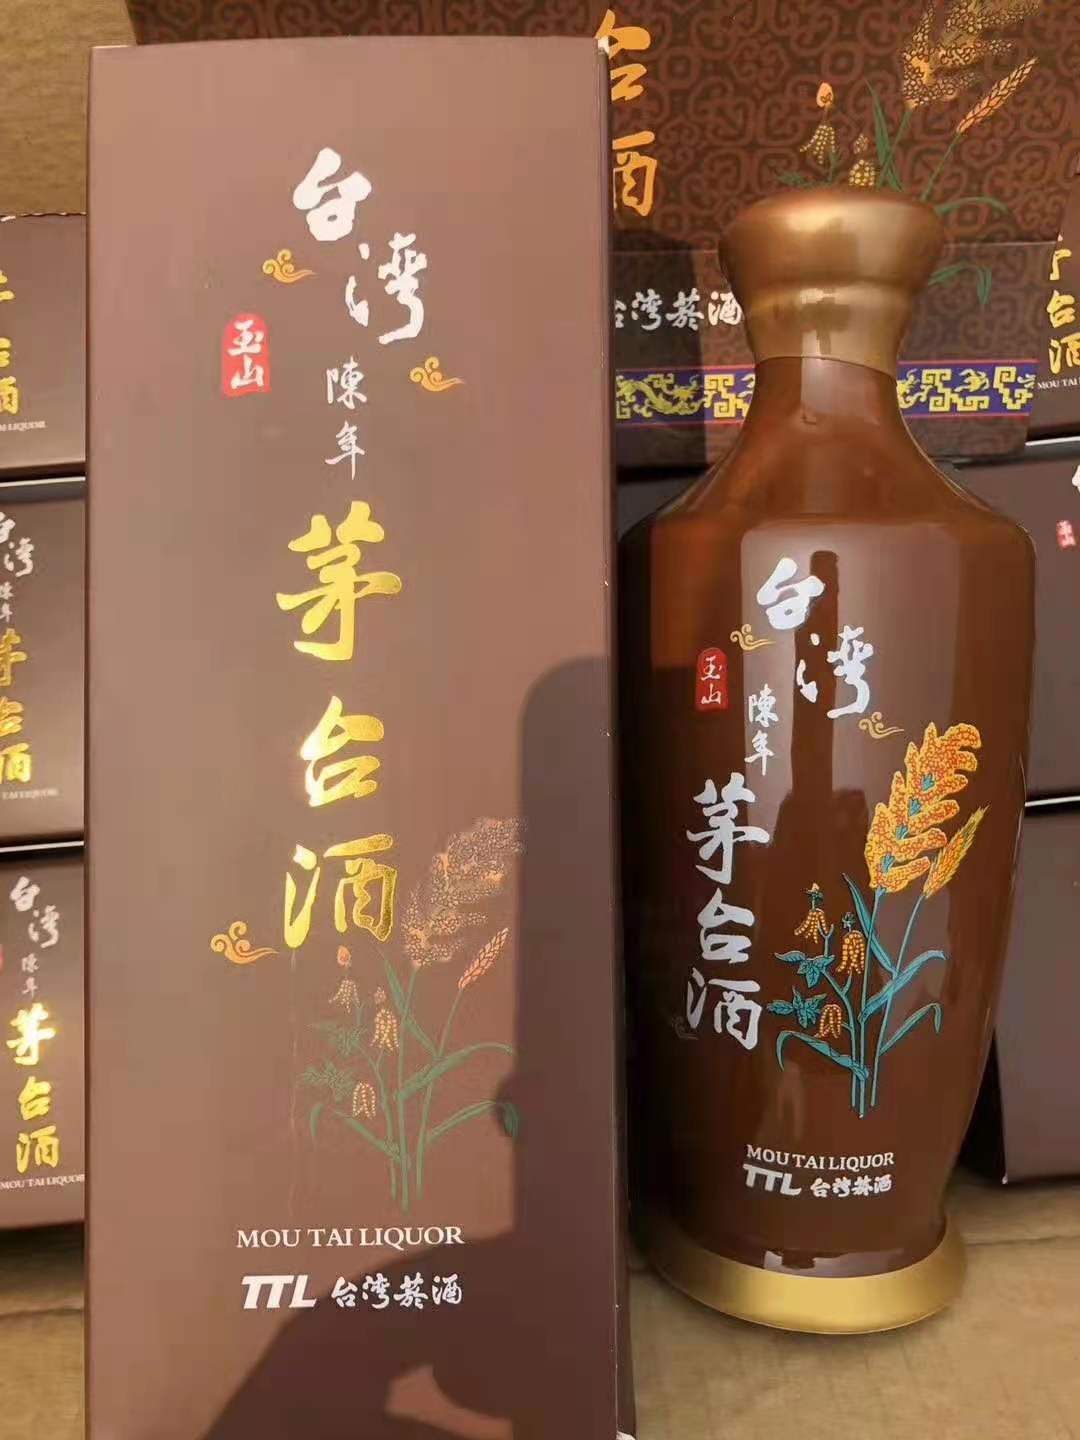 玉山陈年**酒52度0.5公升中国台湾嘉义棕瓷瓶酱香型